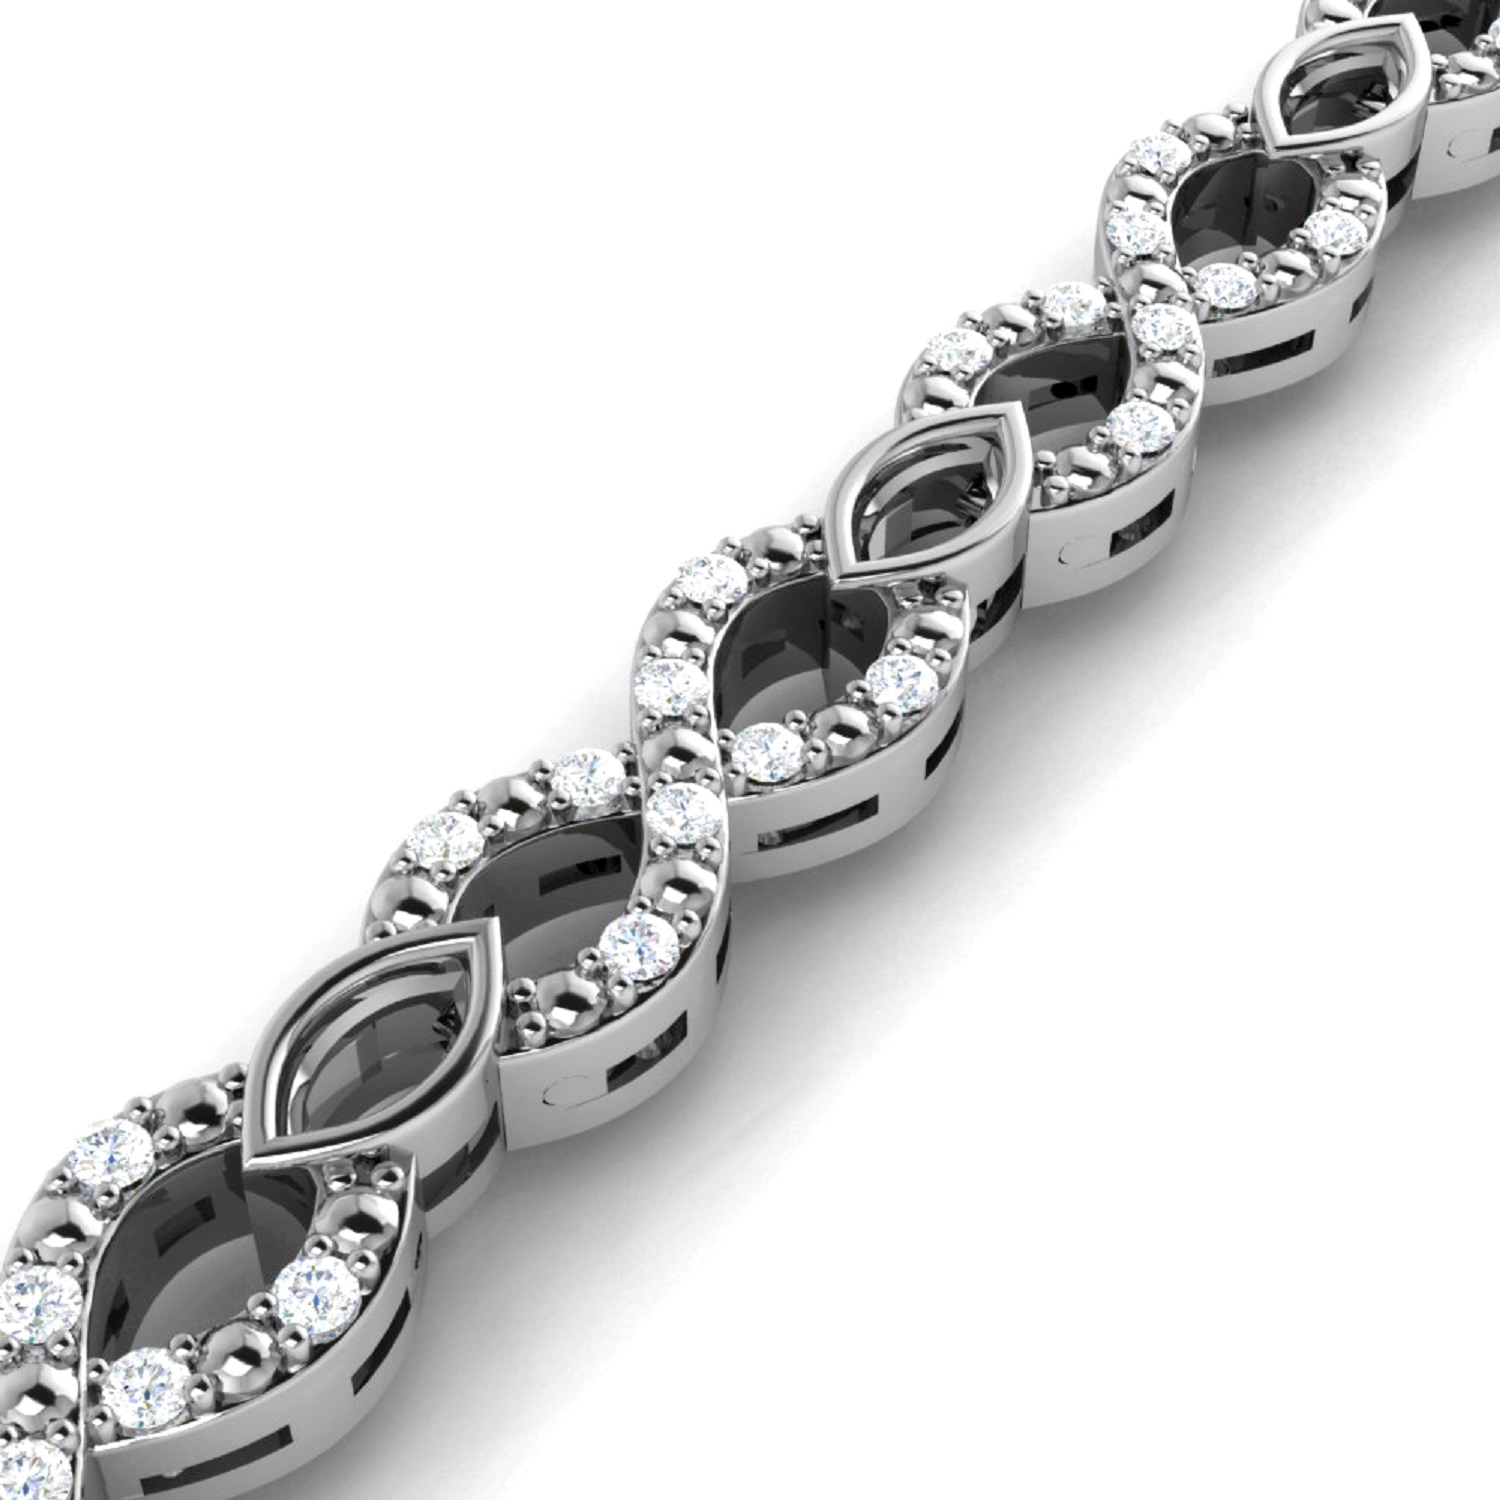 Diamond Princess Genuine Luxurious 2 Ctw Natural Diamond Infinity Bracelet In Sterling Silver